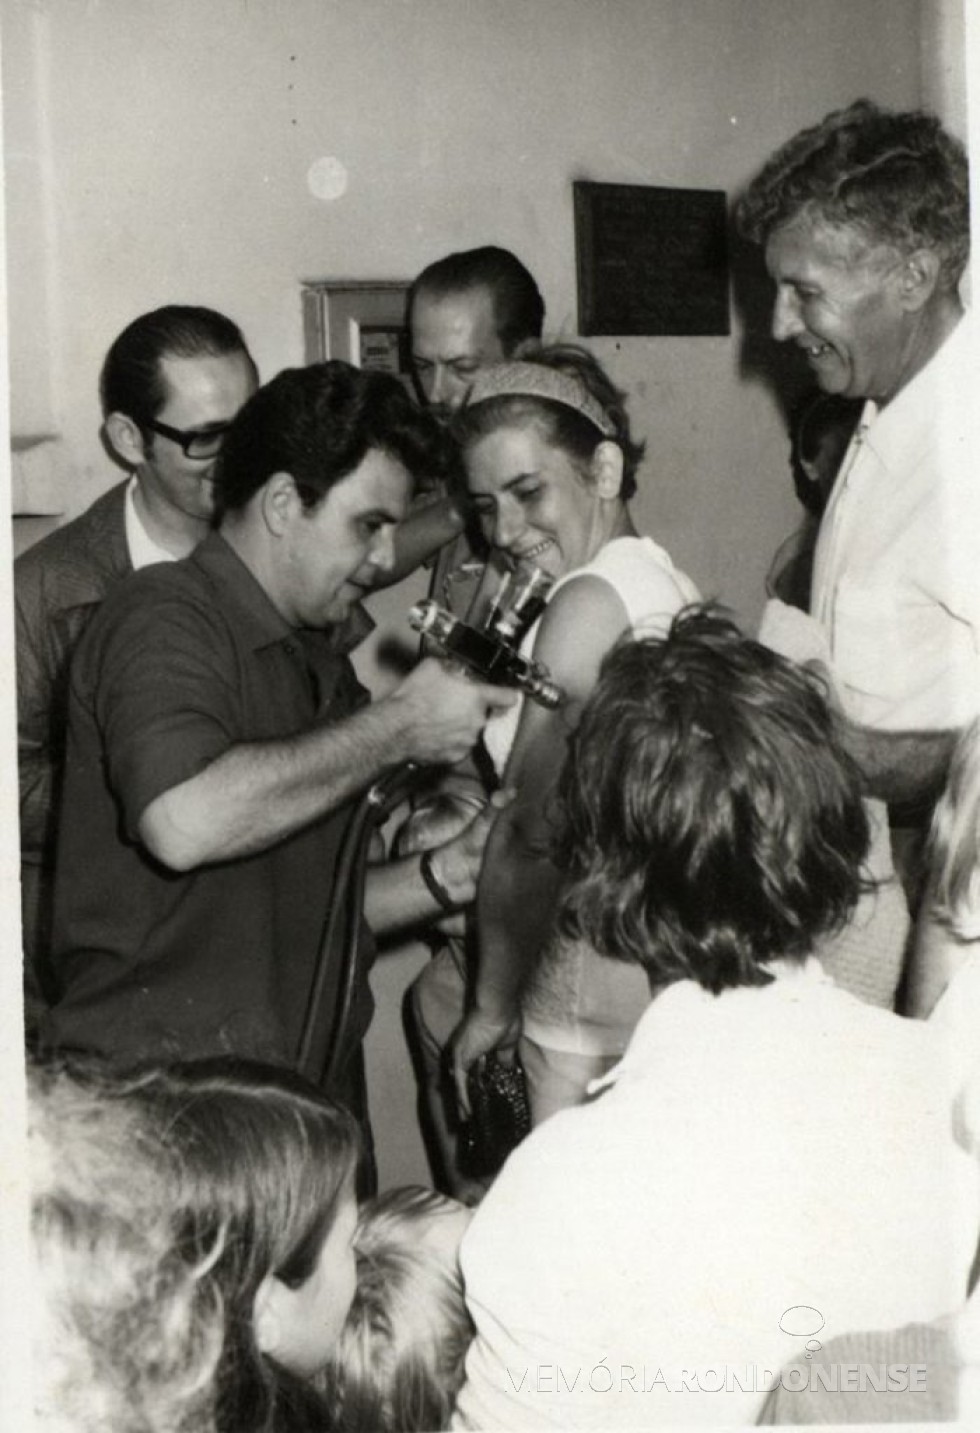 || Primeira-dama Virica (nascida Zart) Poersch recebendo vacina contra varíola do secretário de Estado de Saúde,  Arnaldo Faivro Busato, em março de 1970.
Na foto, ao fundo, da direita a esquerdade, vereador Nori Pooter e Renato Guzzoni - cirurgião-dentista.
Á direita: prefeito municipal Dealmo Selmiro Poersch. 
Imagem: Acervo Fundo Fotográfico de Marechal Cândido Rondon - FOTO 2 -
